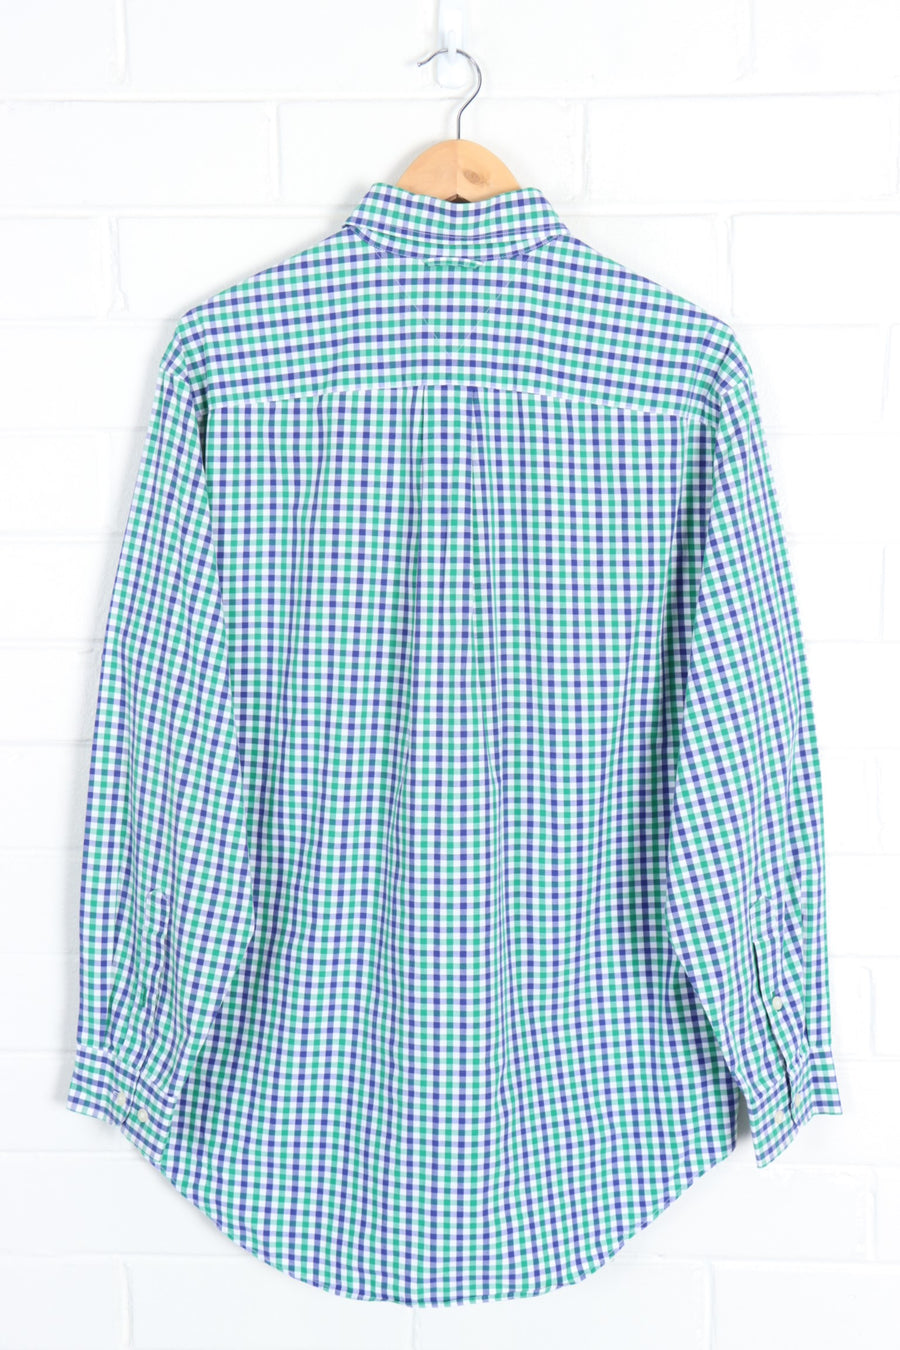 TOMMY HILFIGER Purple & Green Gingham Long Sleeve Shirt (L) - Vintage Sole Melbourne